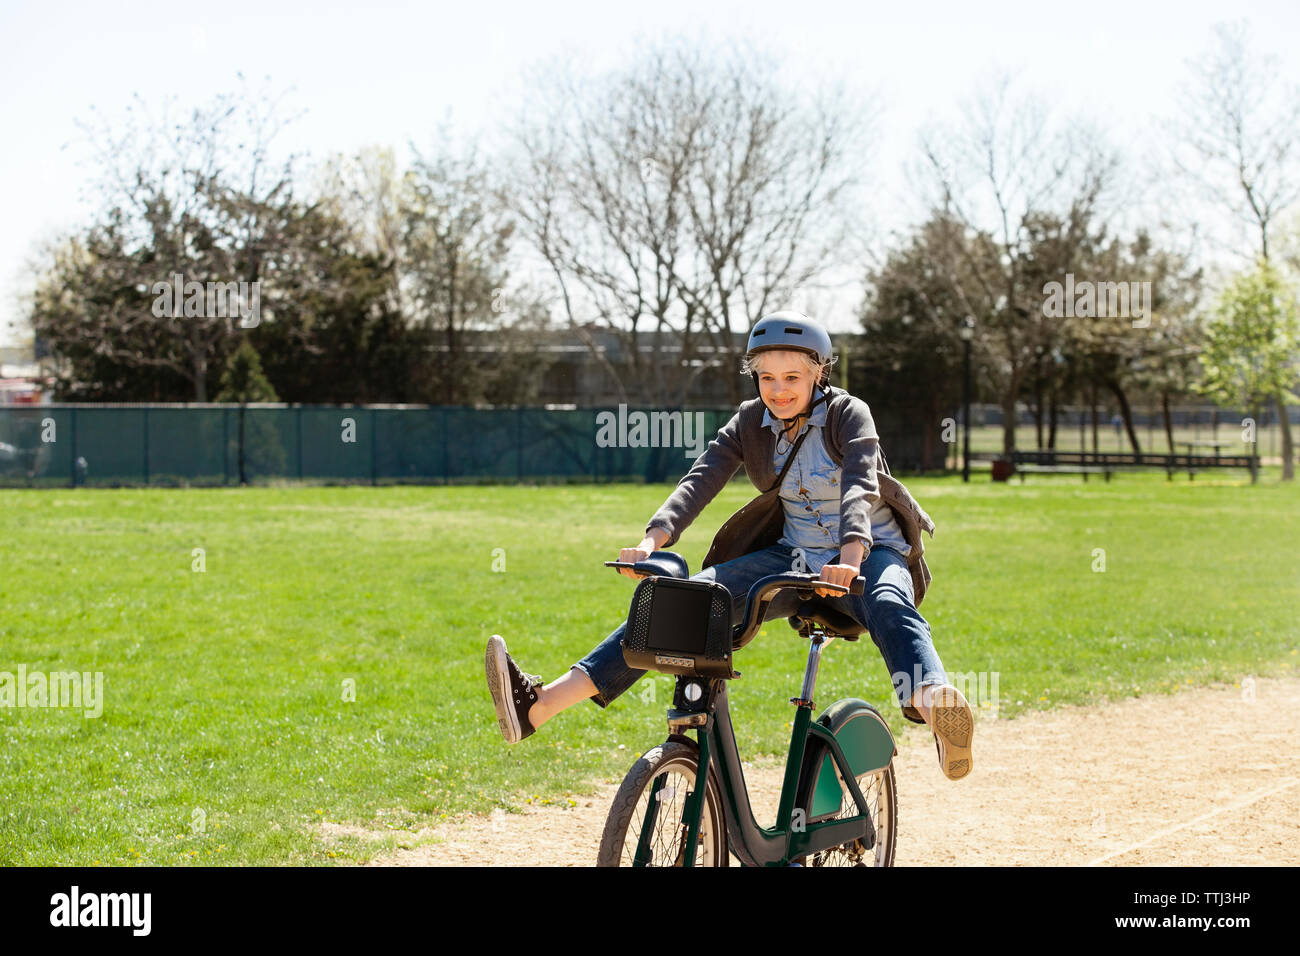 Fröhliche Frau spielen beim Reiten Fahrrad im Park Stockfoto